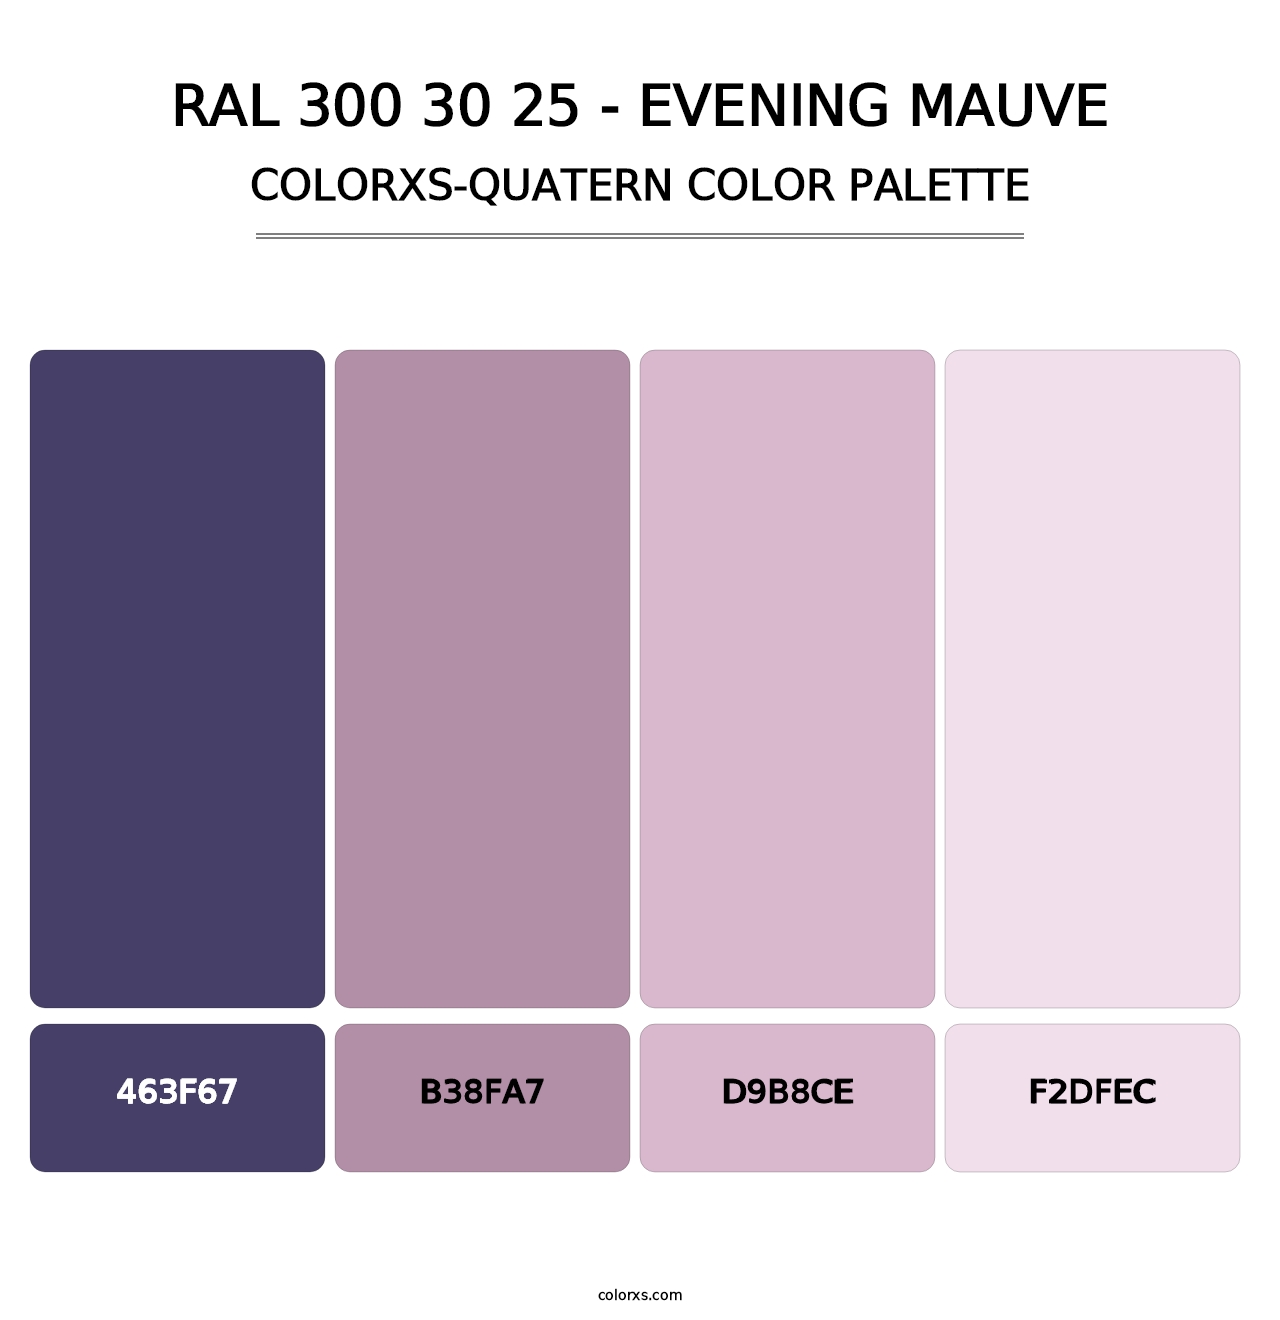 RAL 300 30 25 - Evening Mauve - Colorxs Quatern Palette